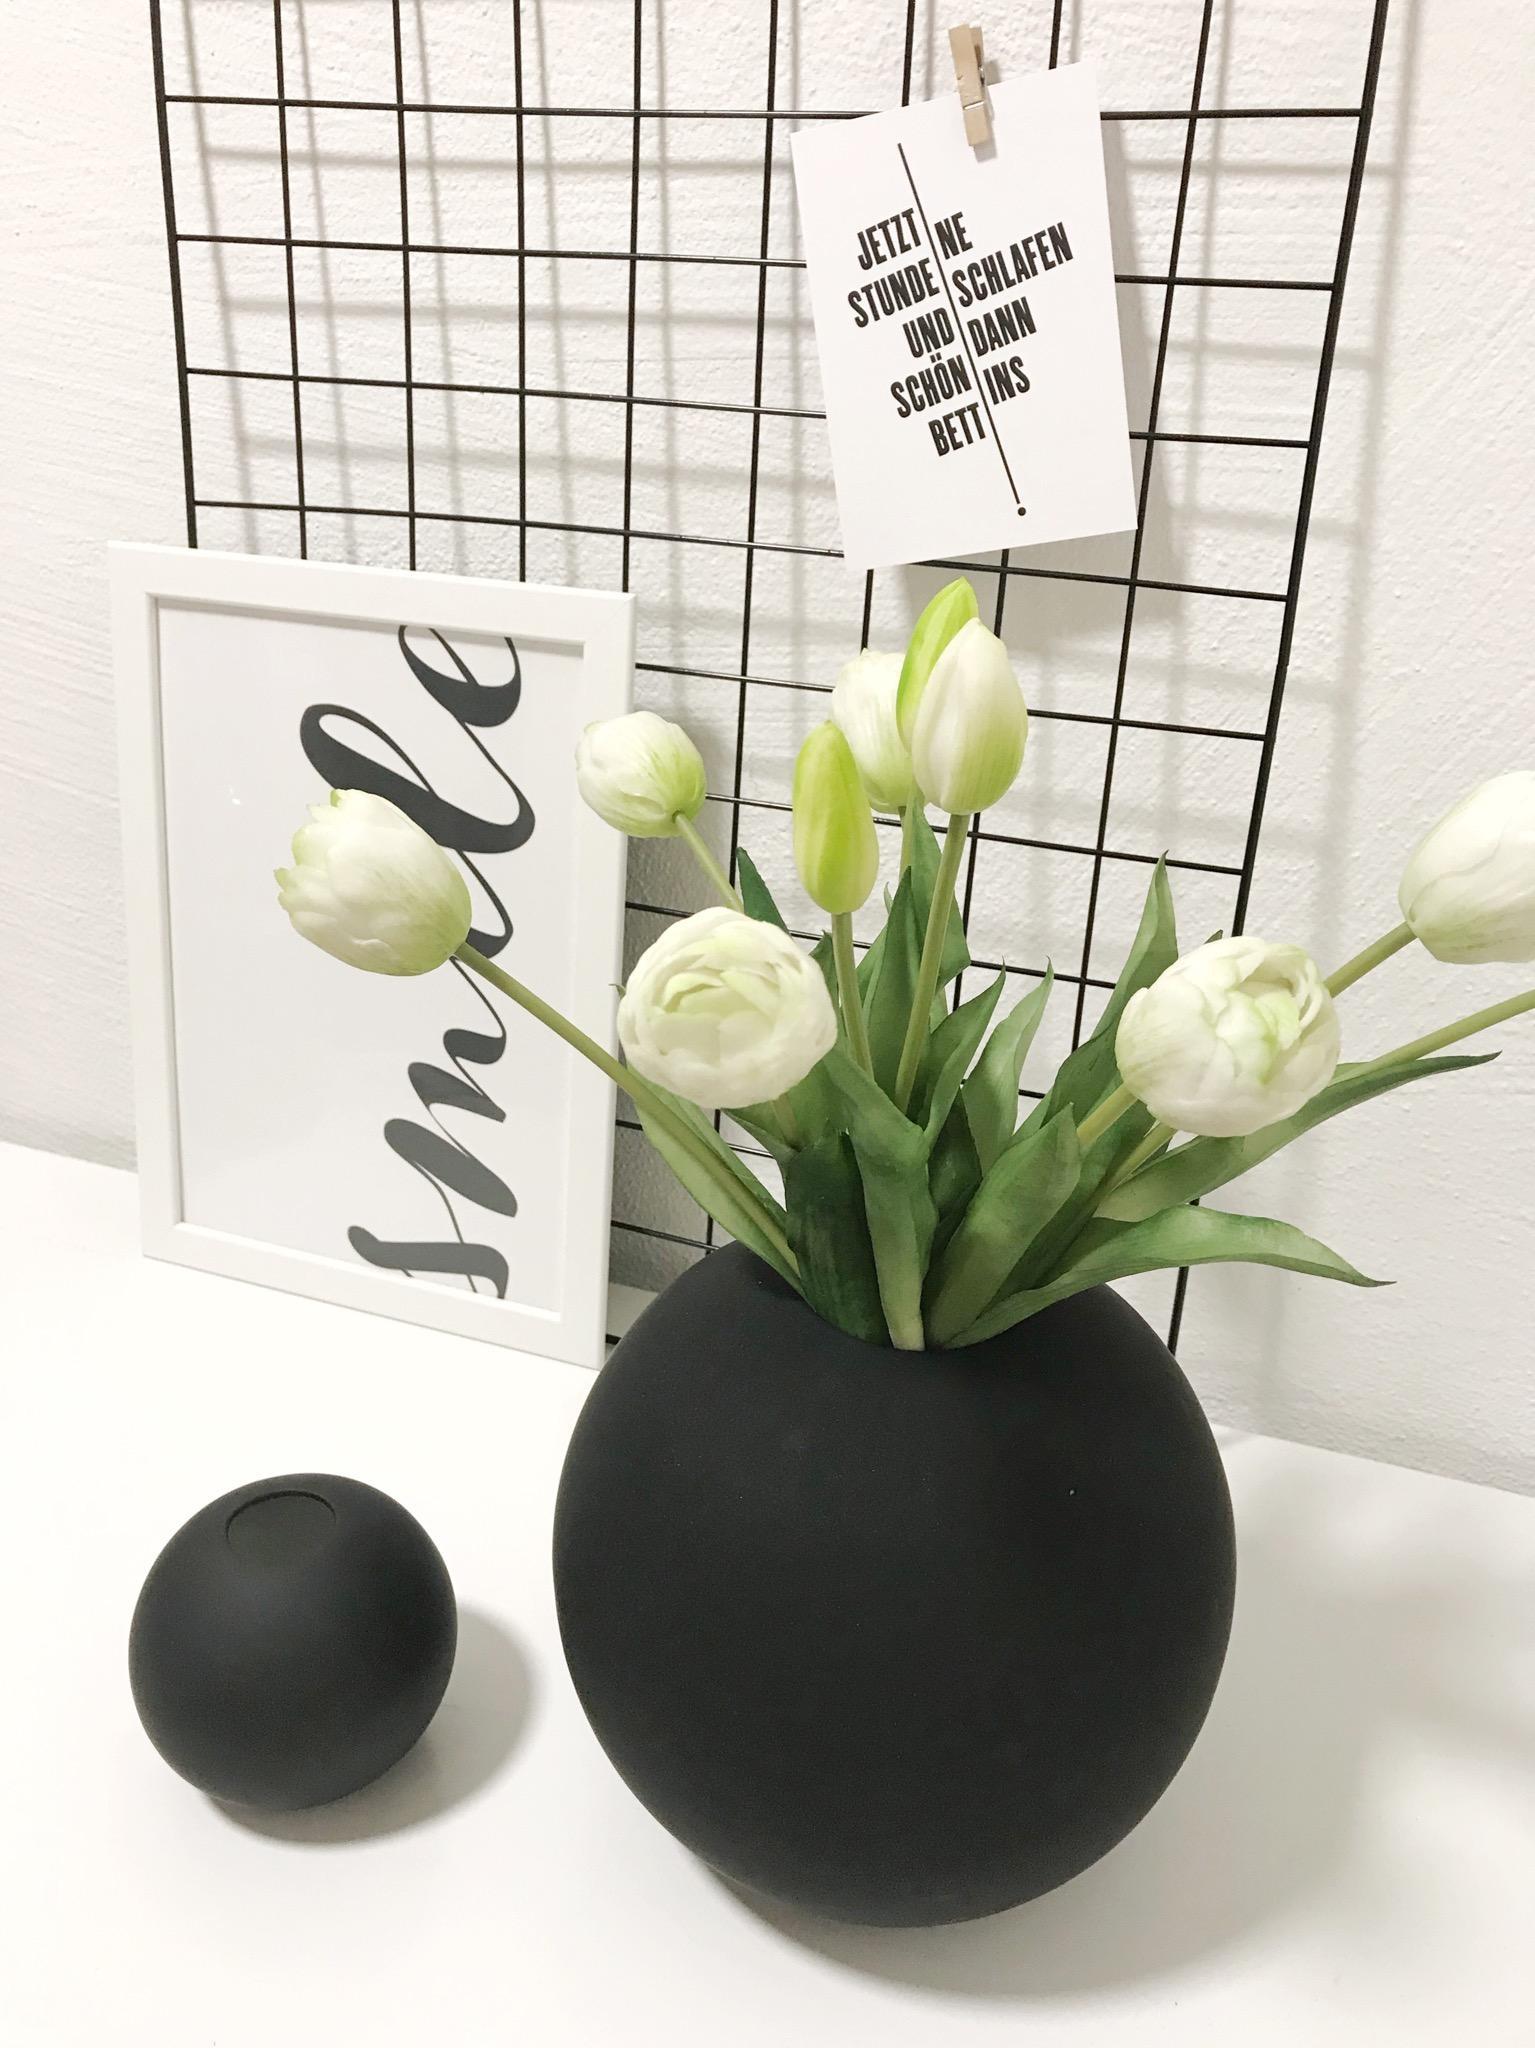 Lieblingsvase im Frühlingsmodus! 🖤 #tulpen #blackandwhite #vase #memoboard #living #interior #deko #monochrom #smile